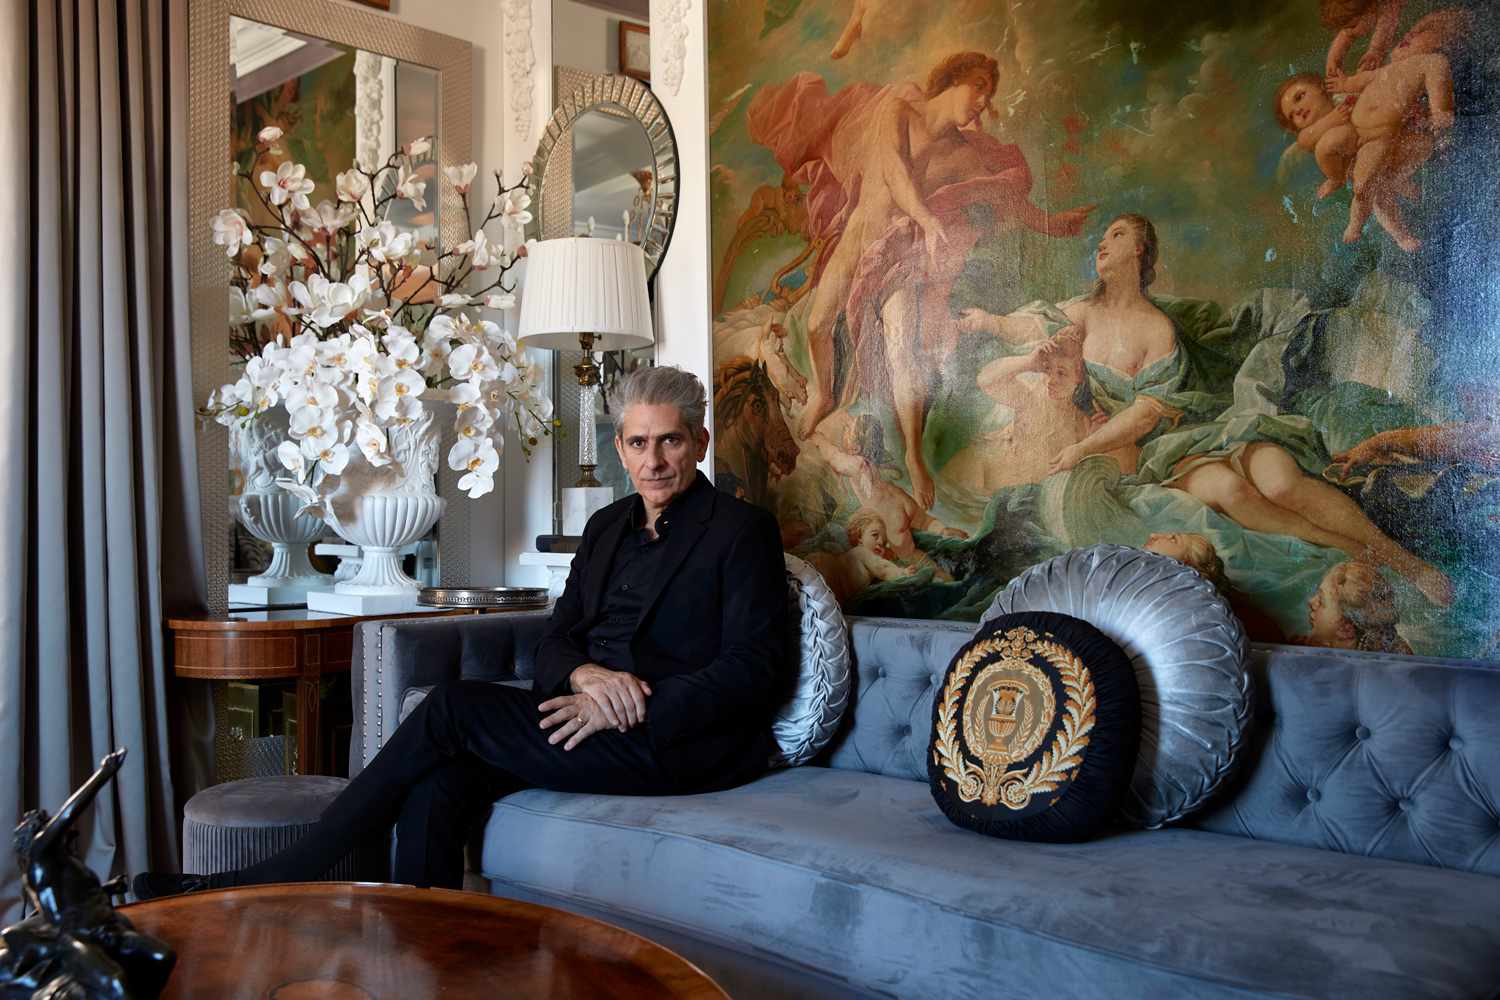 บ้าน NYC 'Otherworldly' ของ Michael Imperioli ดูเหมือนอยู่ใน 'The White Lotus' - ดูข้างใน